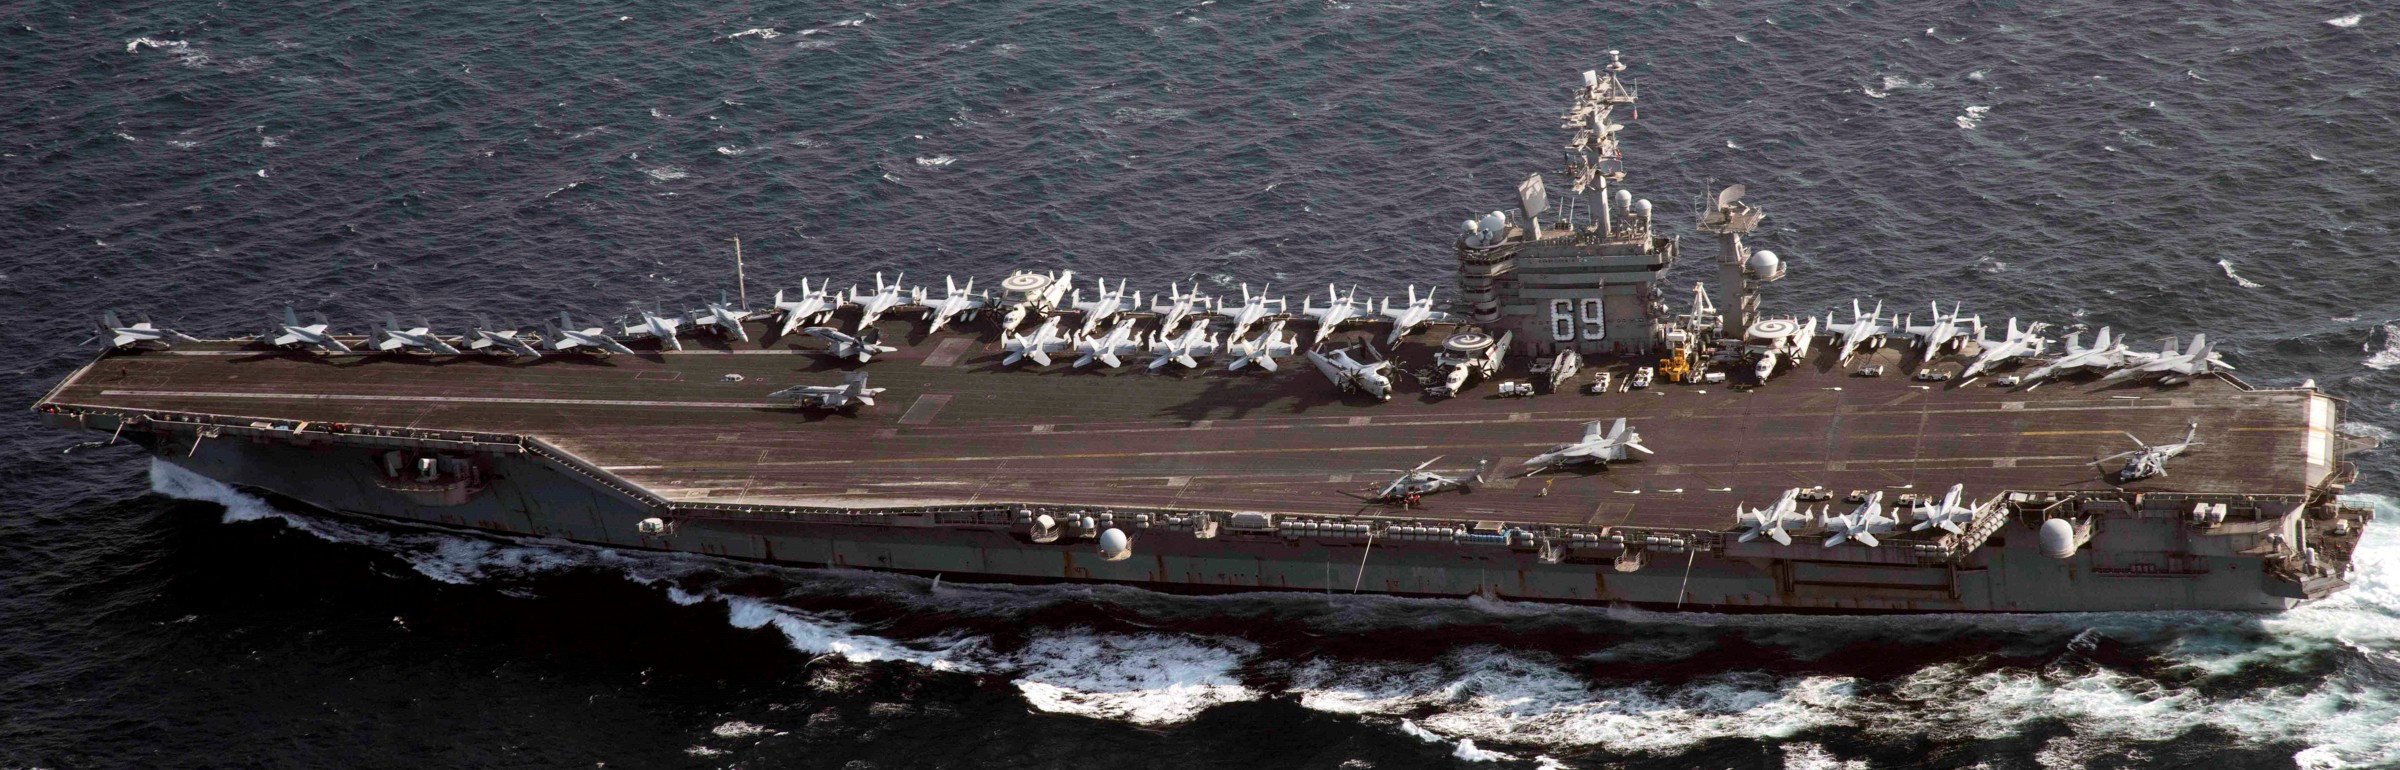 cvn-69 uss dwight d. eisenhower aircraft carrier air wing cvw-3 us navy 5th fleet aor 45